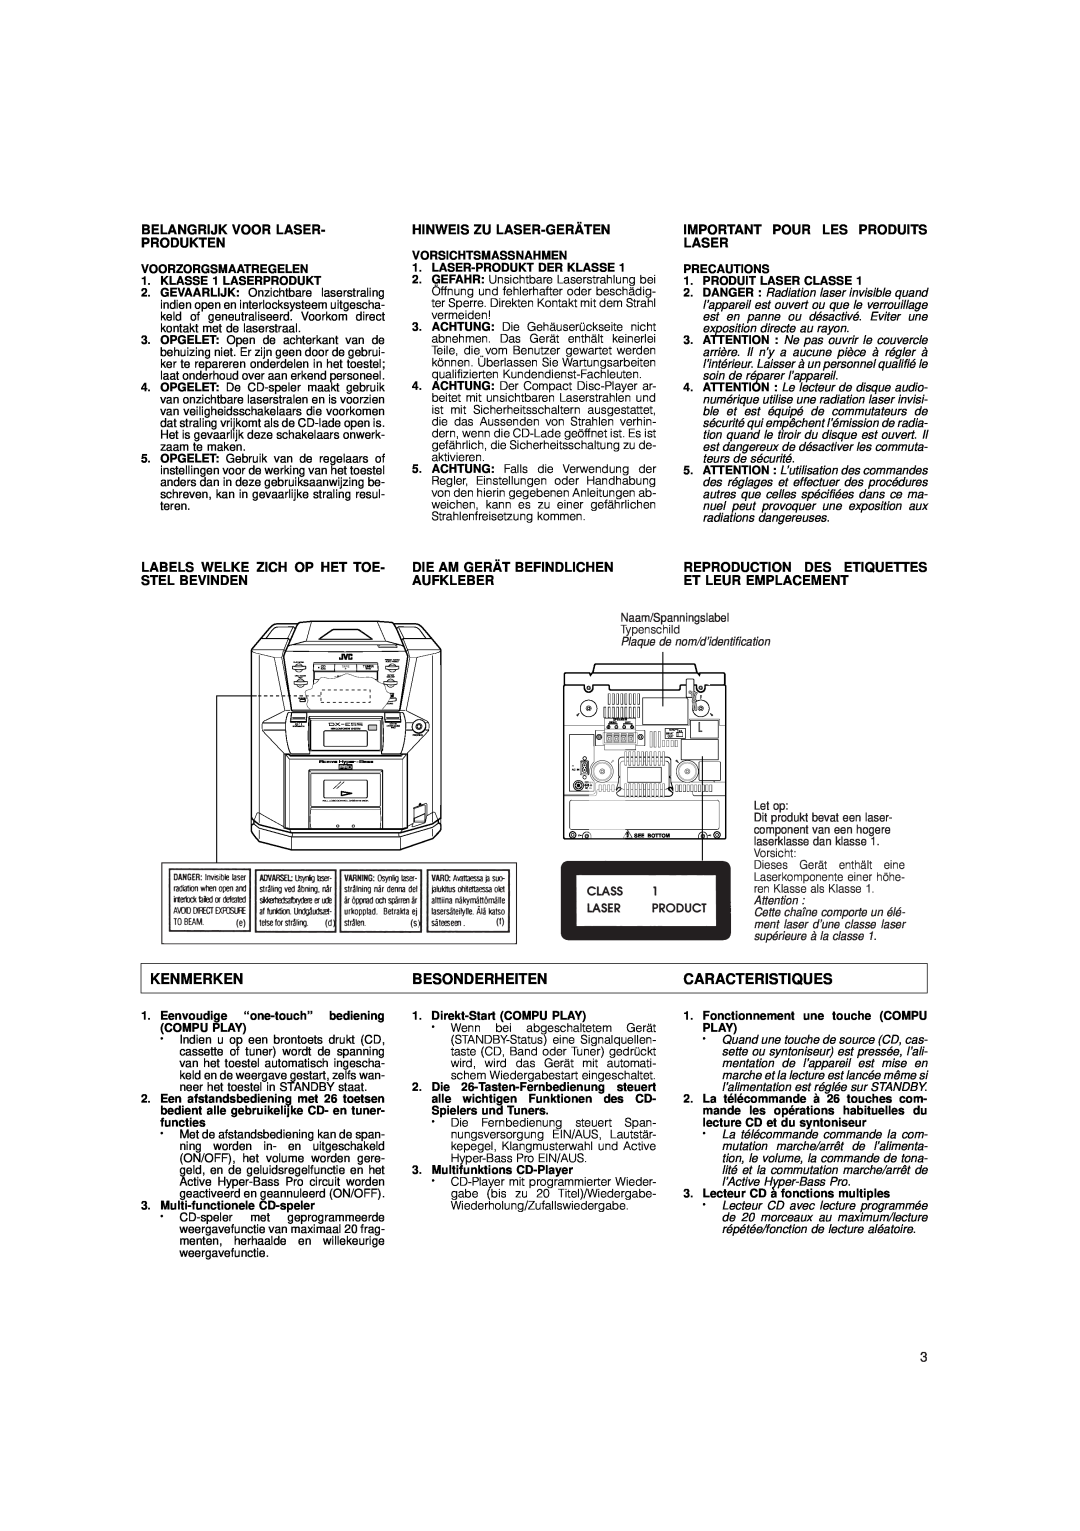 JVC DX-E55 manual Kenmerken, Besonderheiten, Caracteristiques, Belangrijk Voor Laser- Produkten, Hinweis Zu Laser-Geräten 